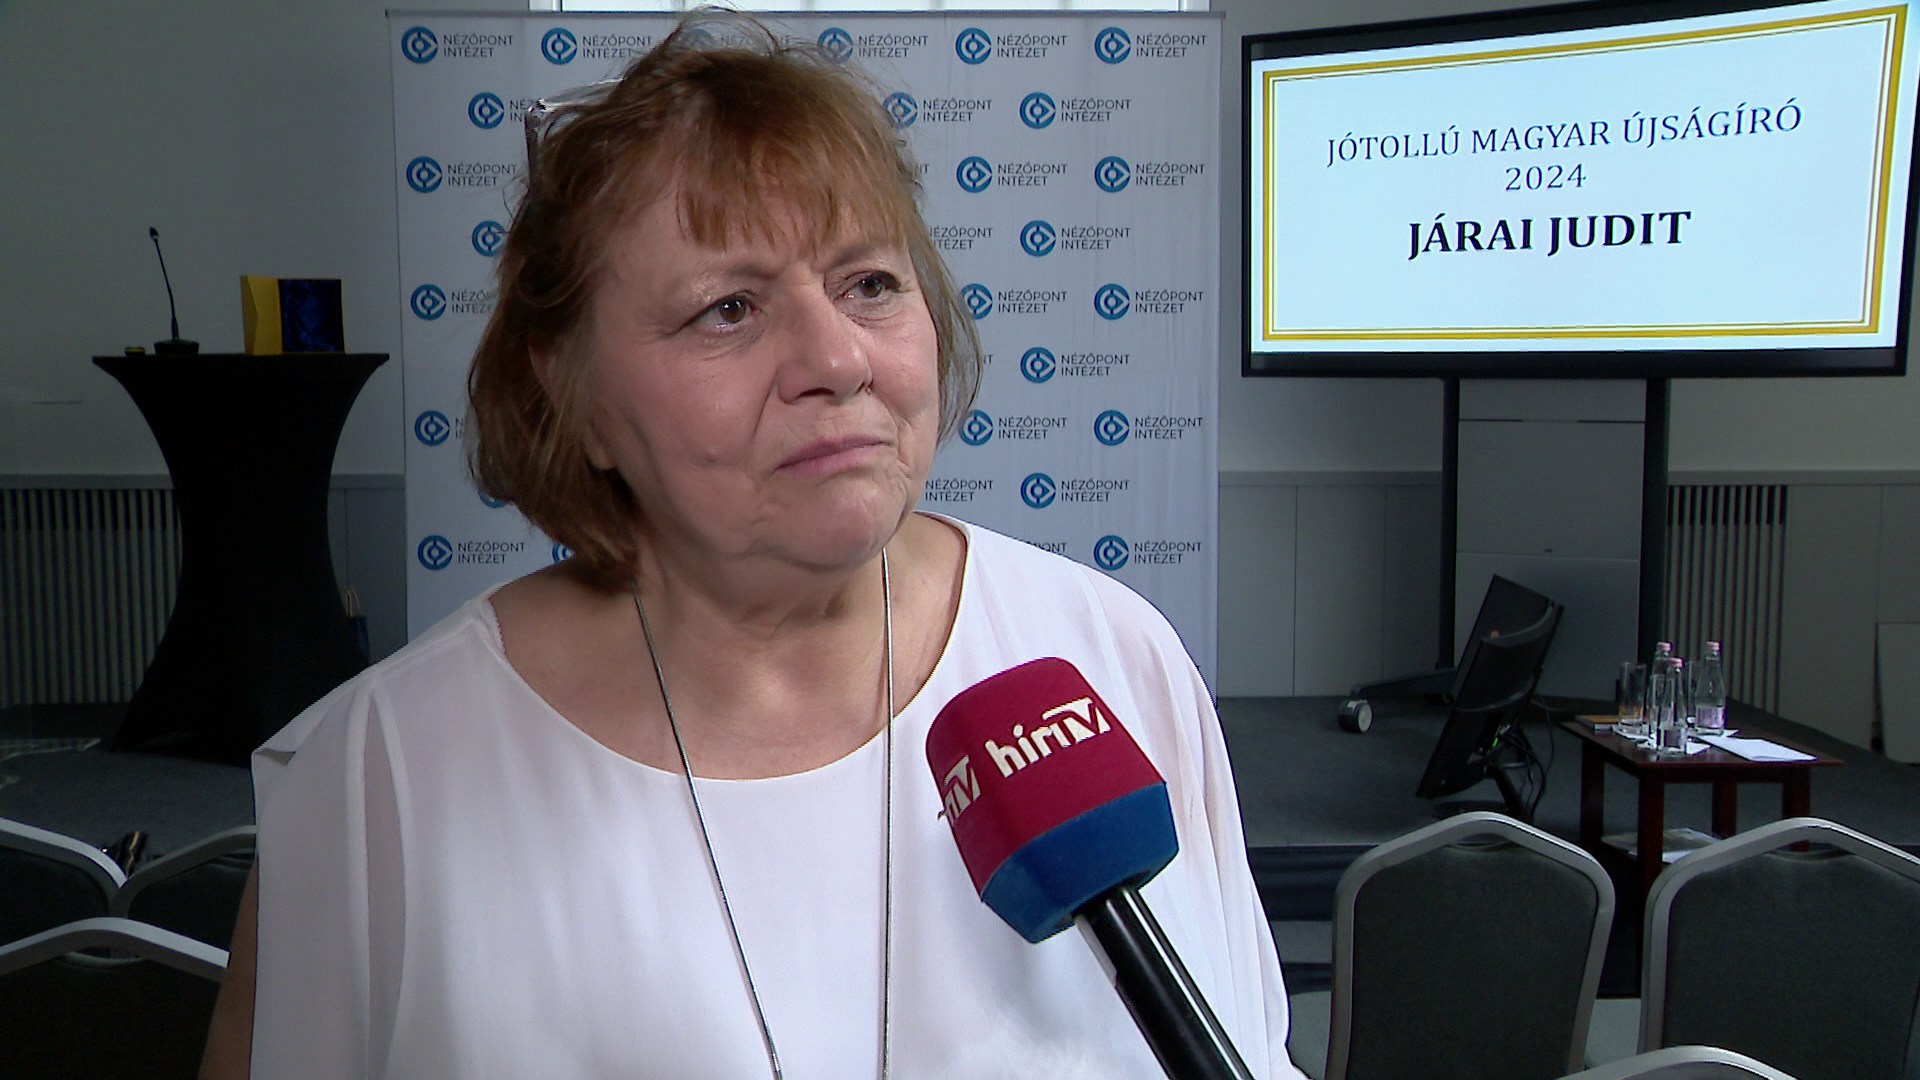 Járai Judit vehette át idén a Jótollú újságíró-díjat + videó